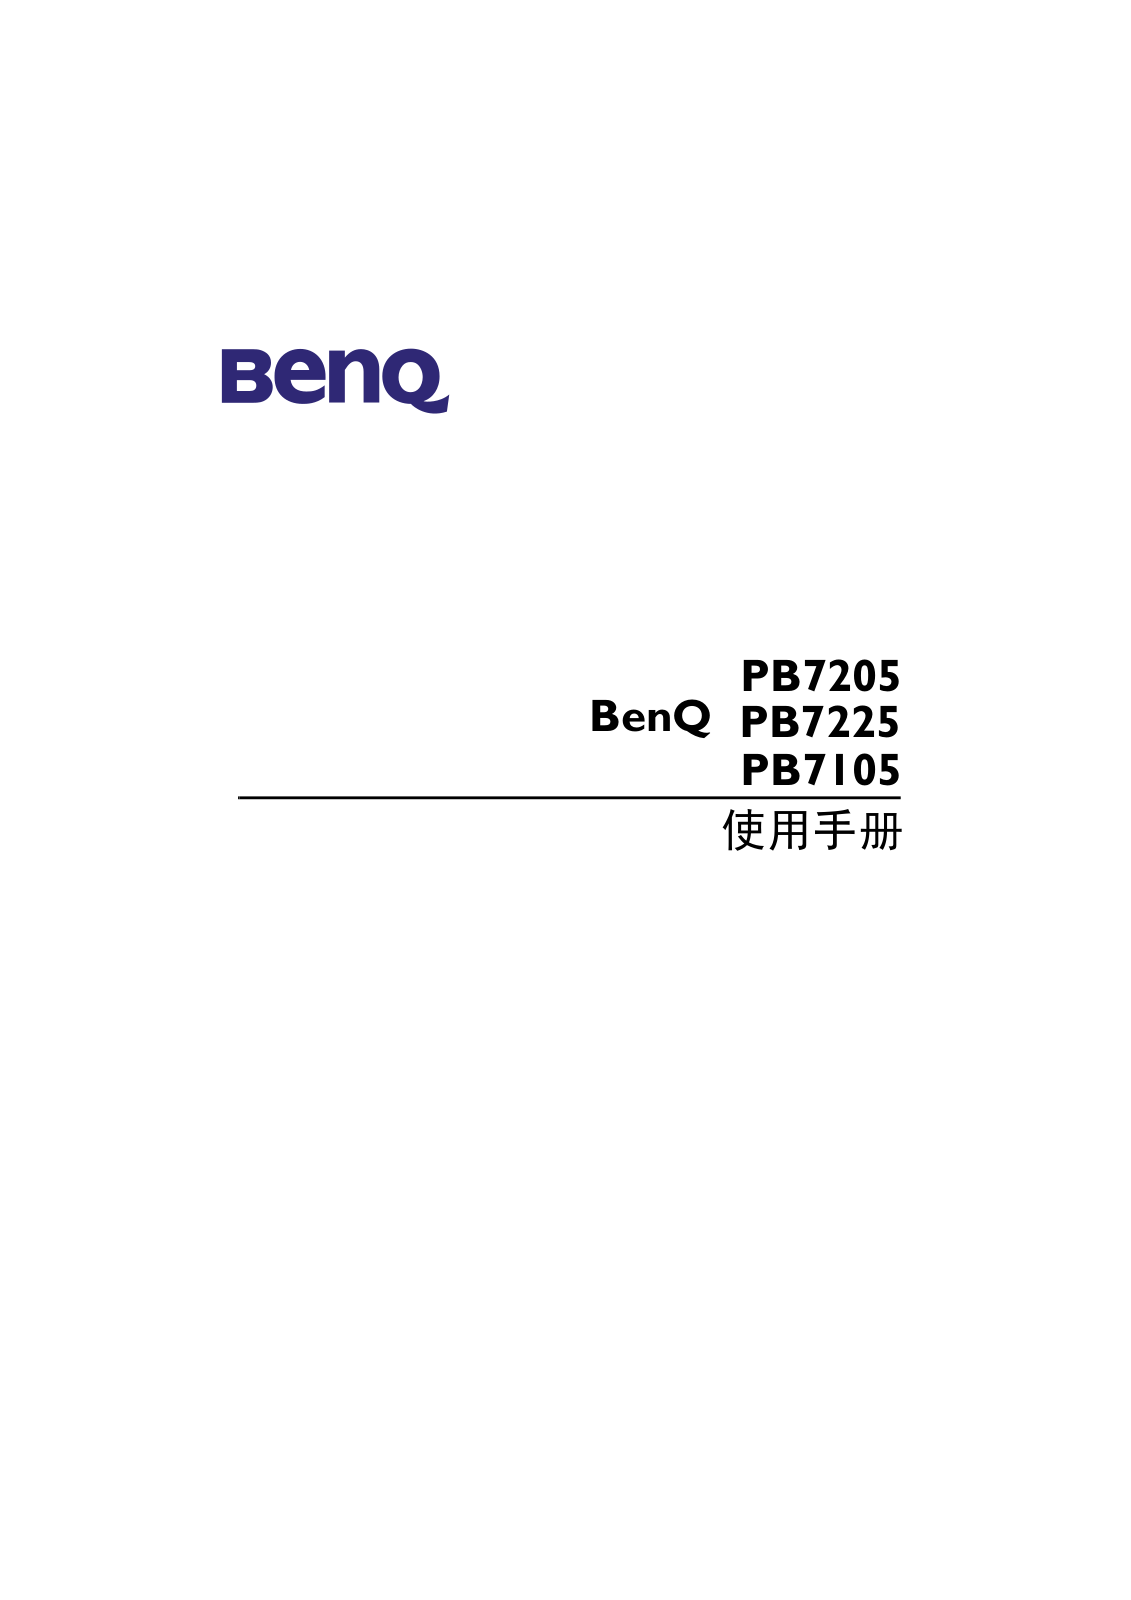 BenQ PB7205, PB7225, PB7105 User Manual